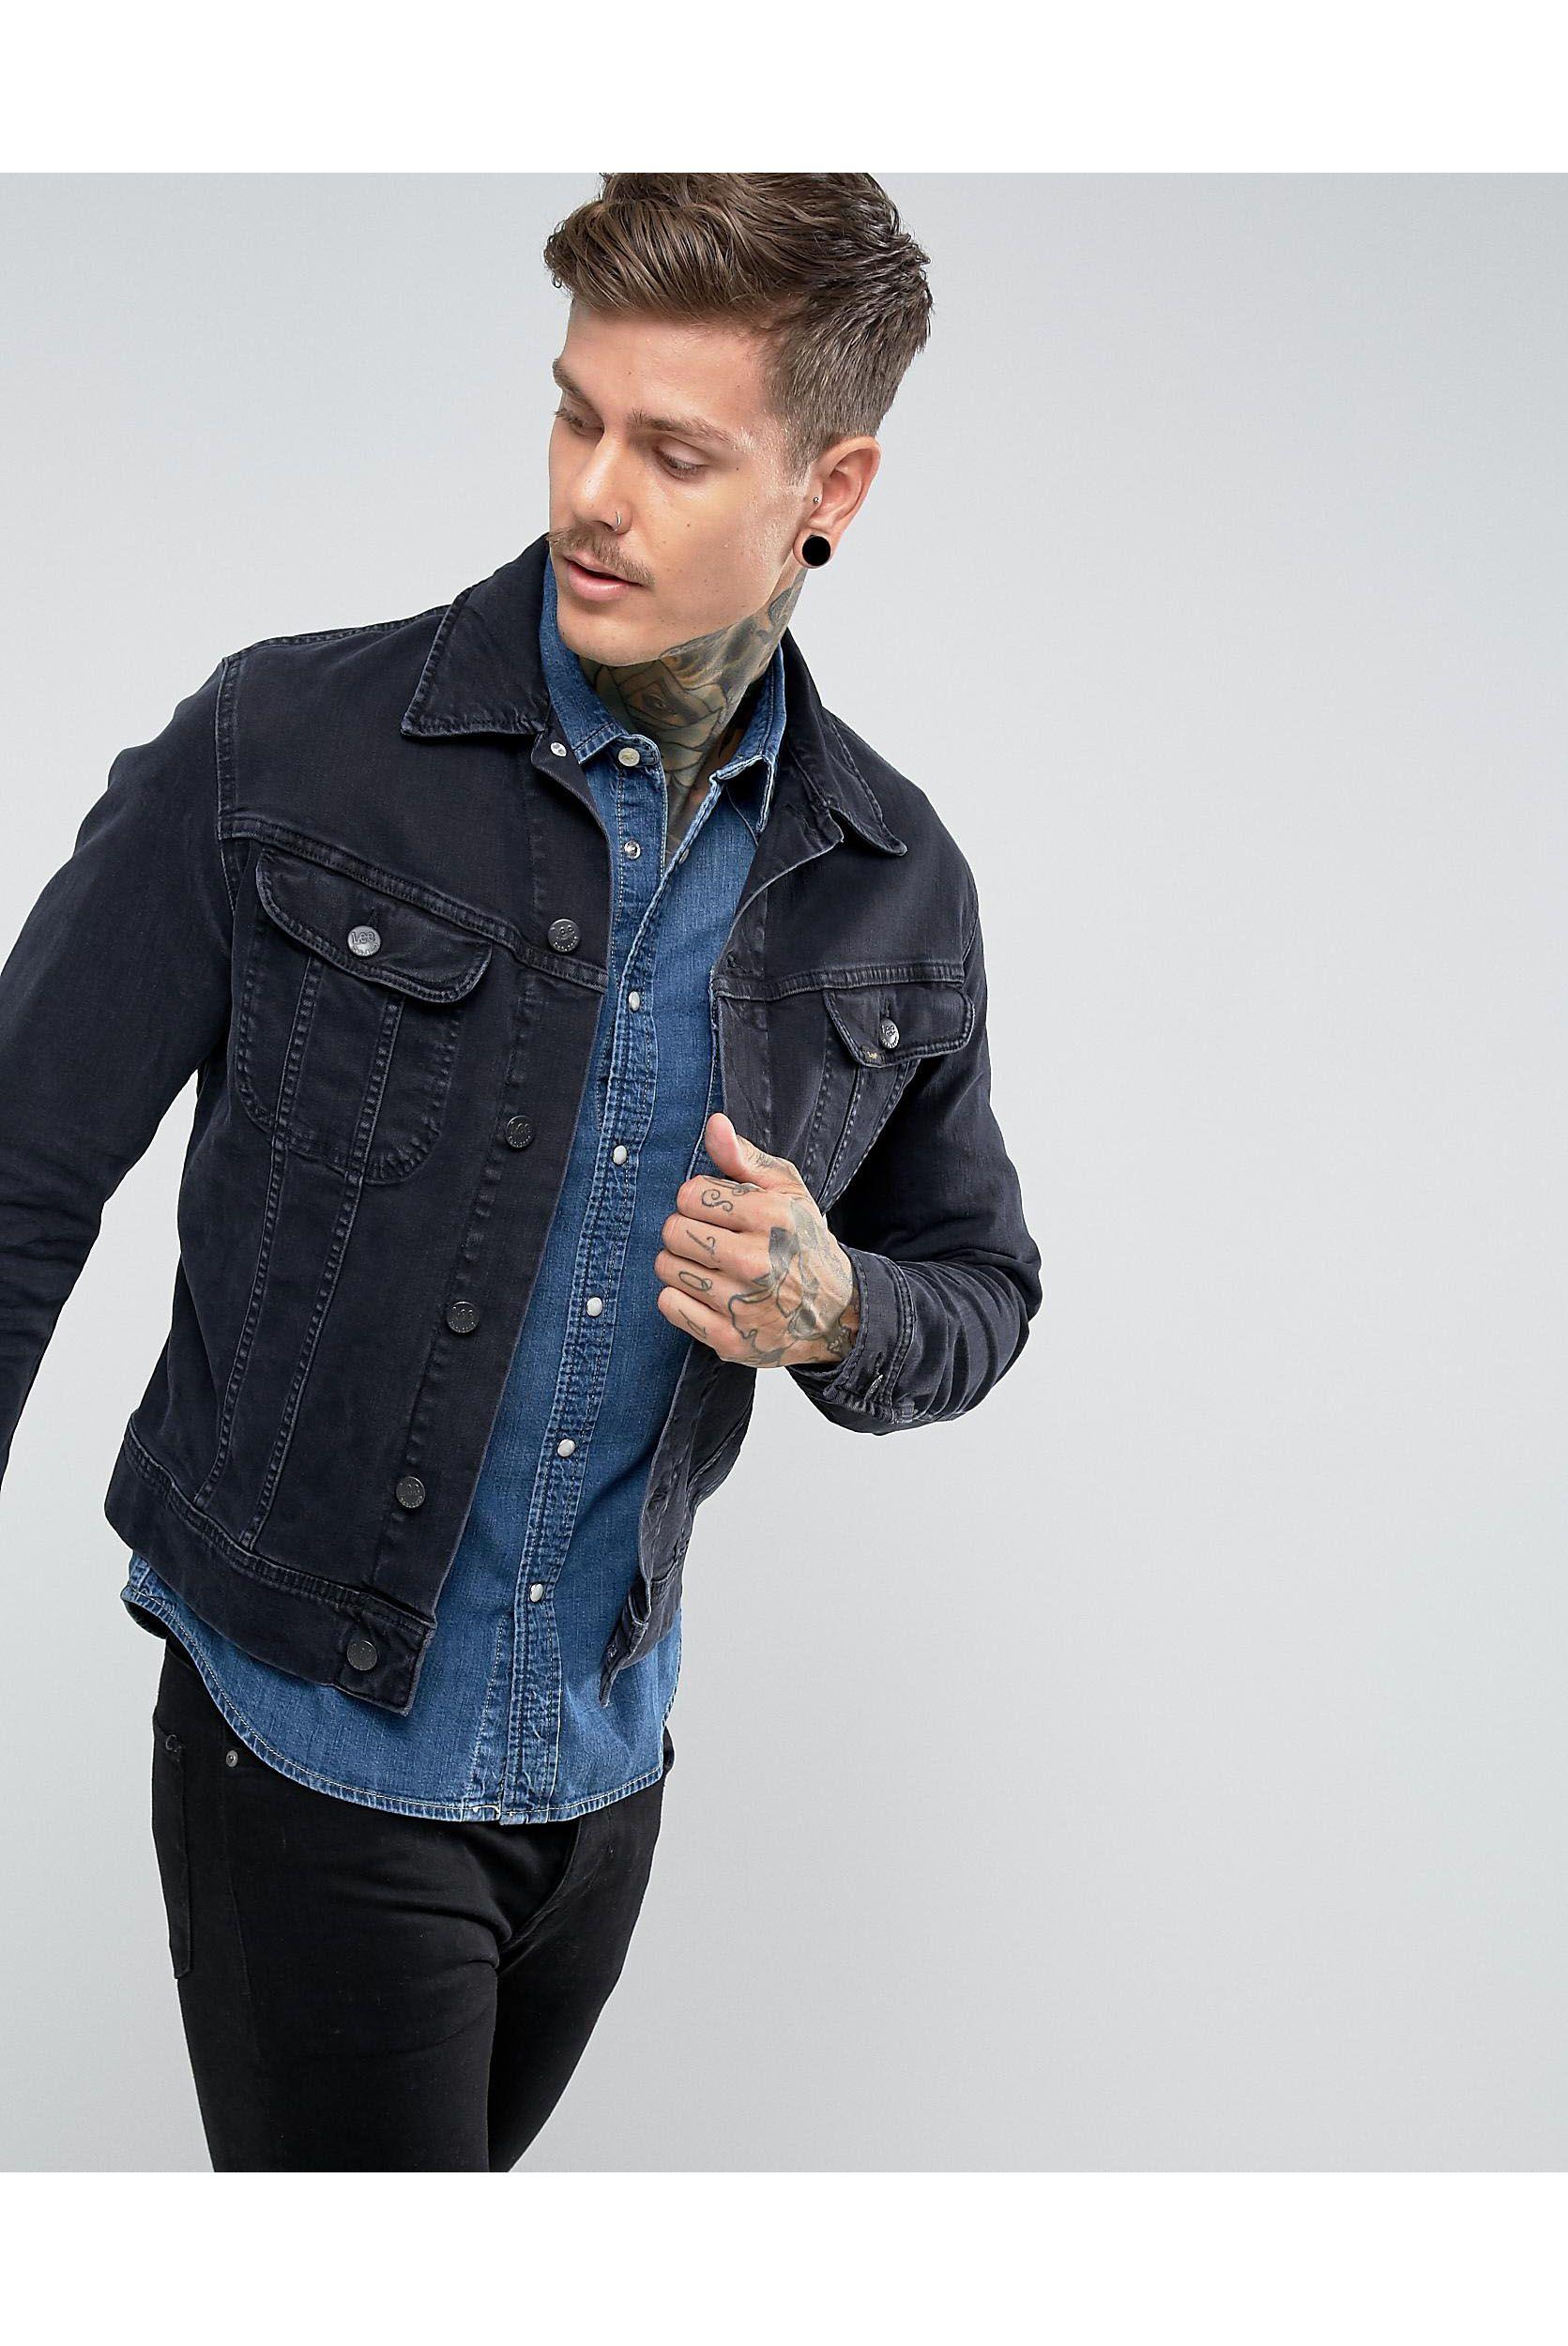 Lee Jeans Denim Rider Jacket Slim Vintage Fit Blue Black for Men - Lyst